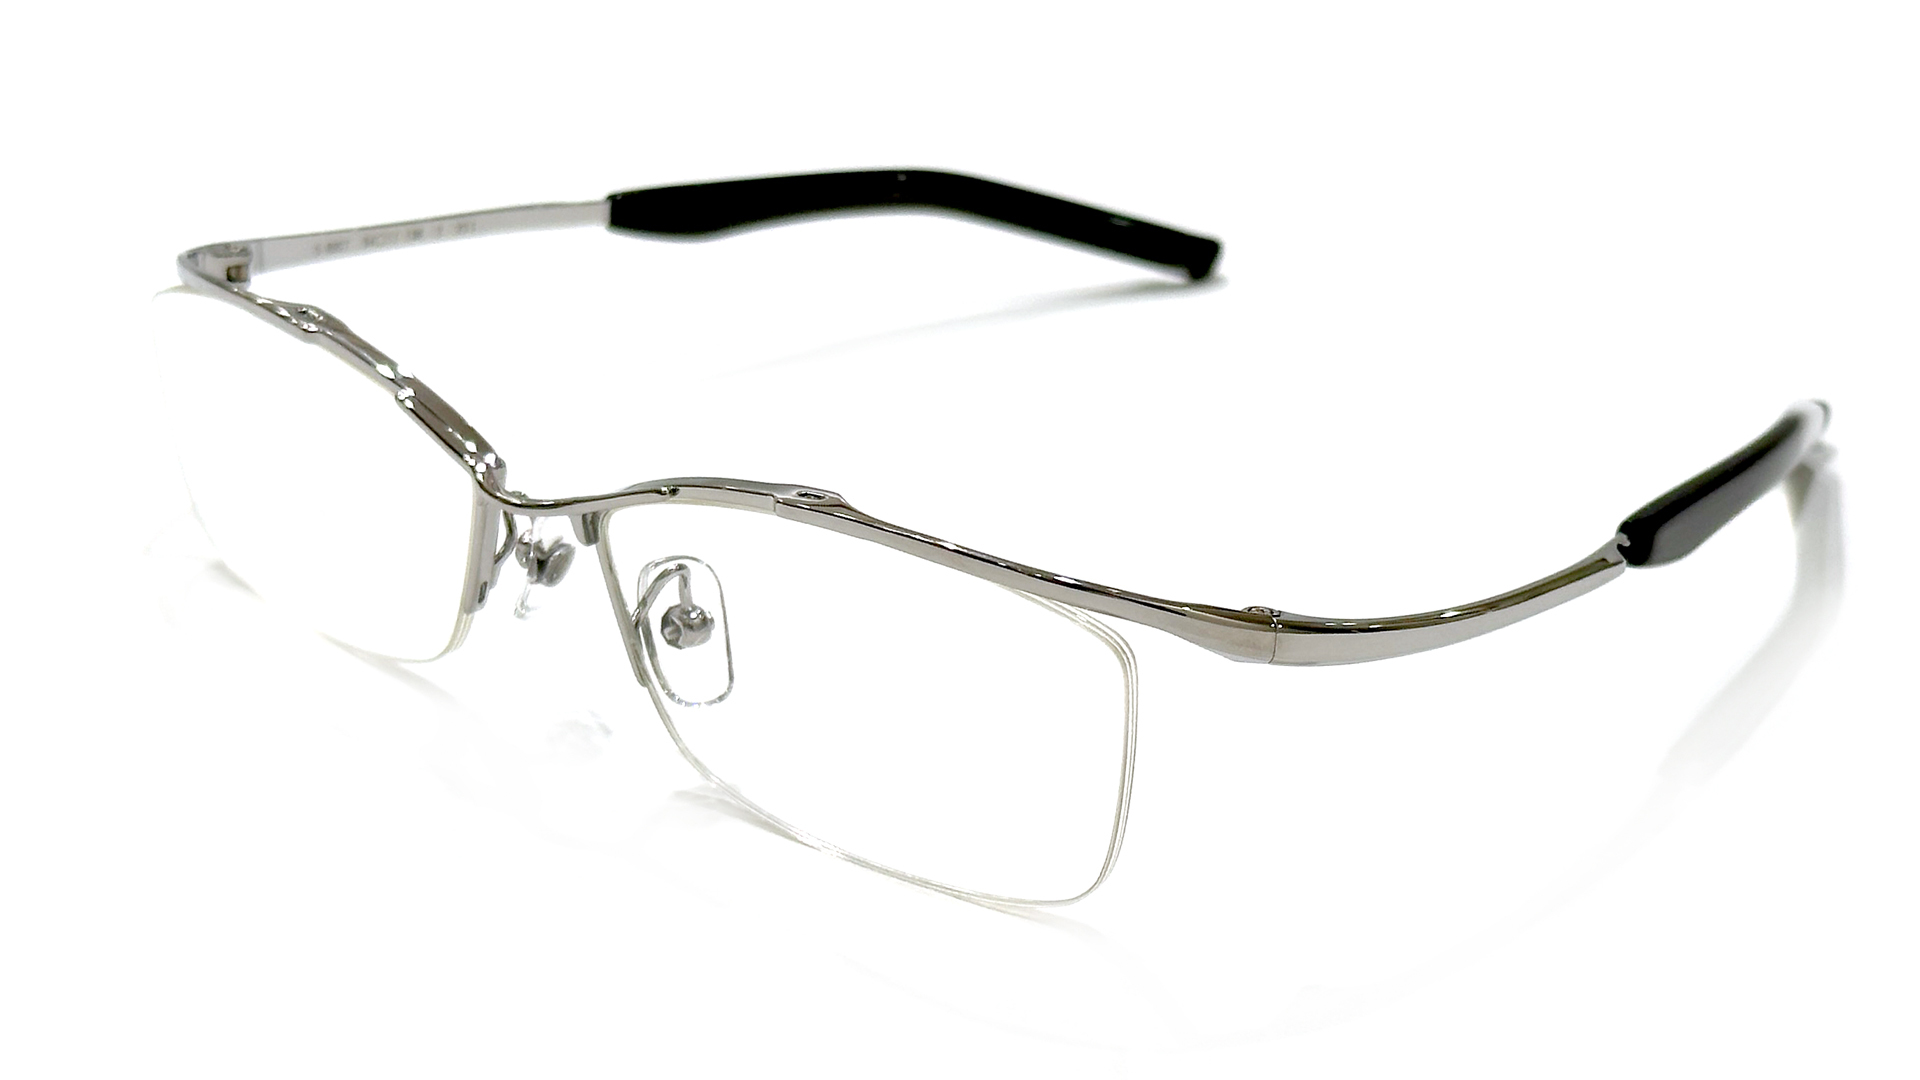 緻密なカッティングで流線形が映える999.9 新作眼鏡フレーム「S-880T 